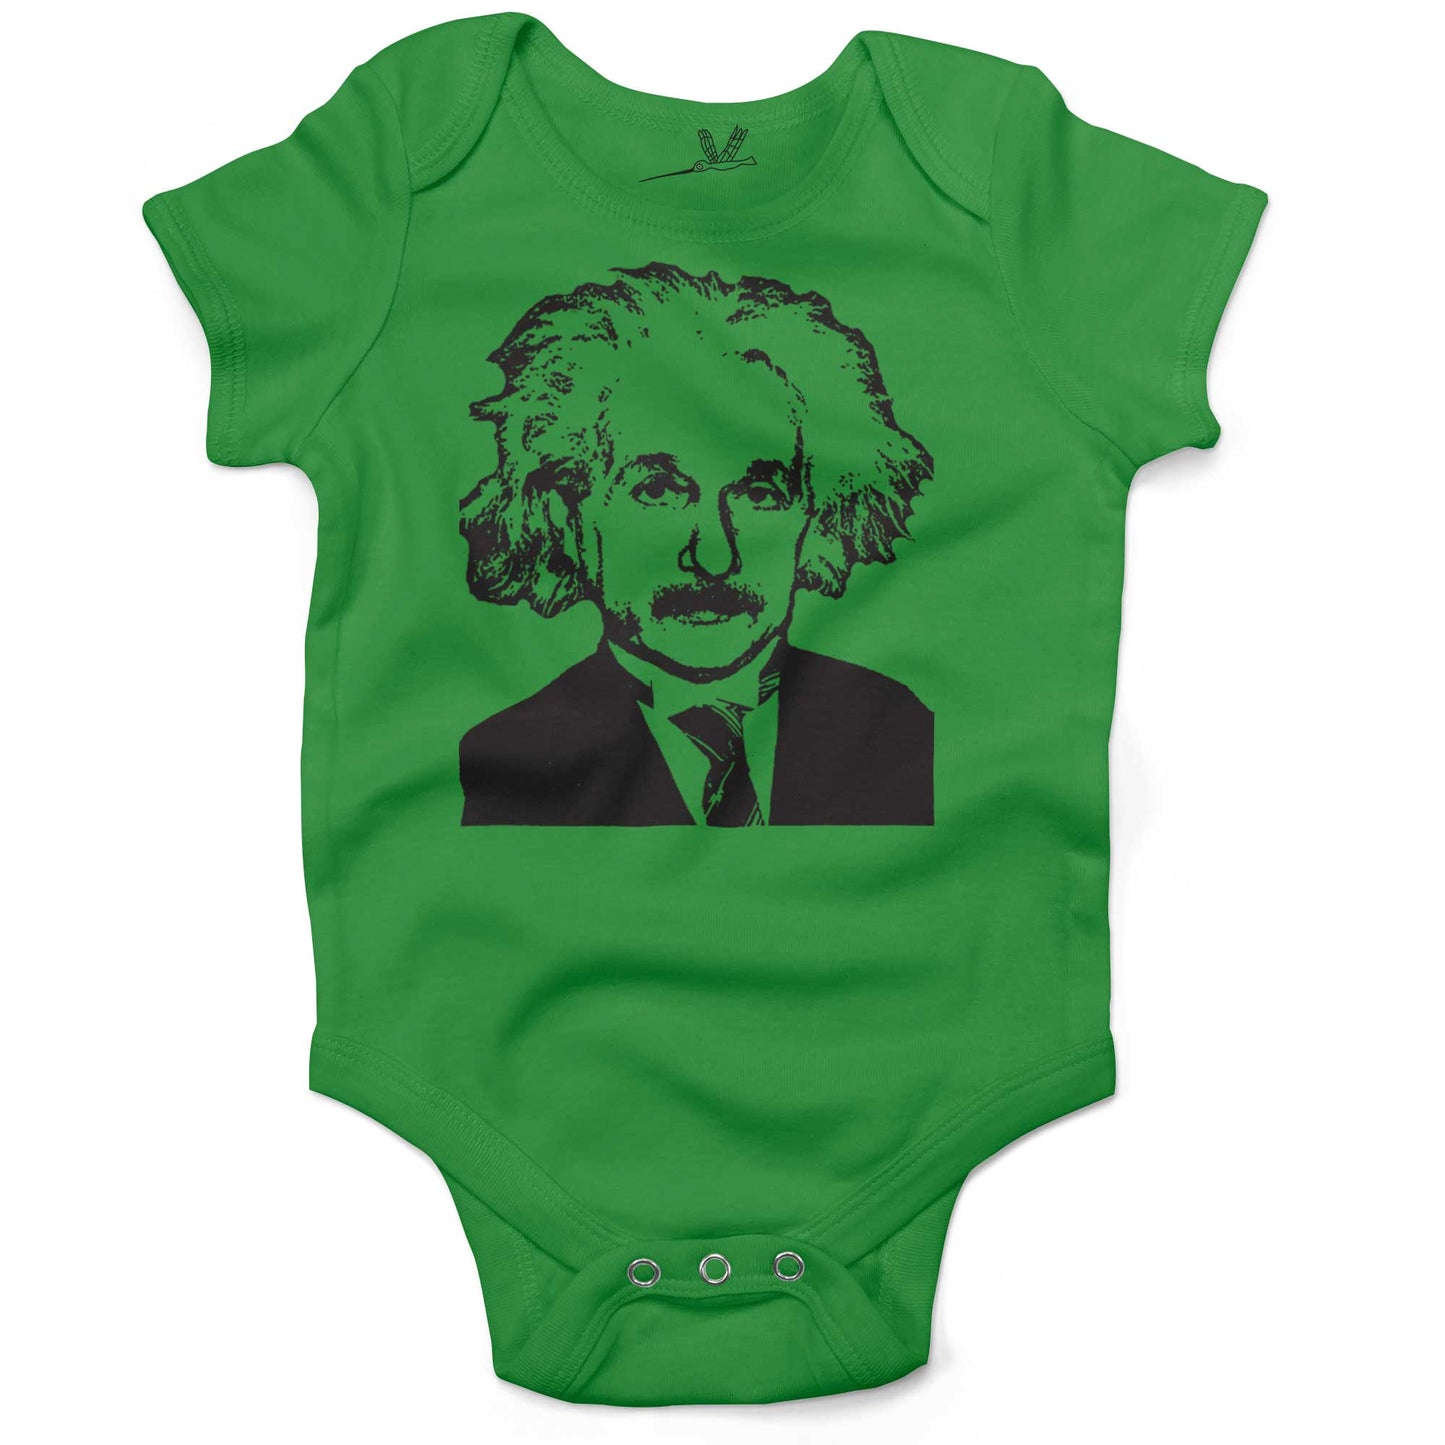 Albert Einstein Infant Bodysuit or Raglan Baby Tee-Grass Green-3-6 months